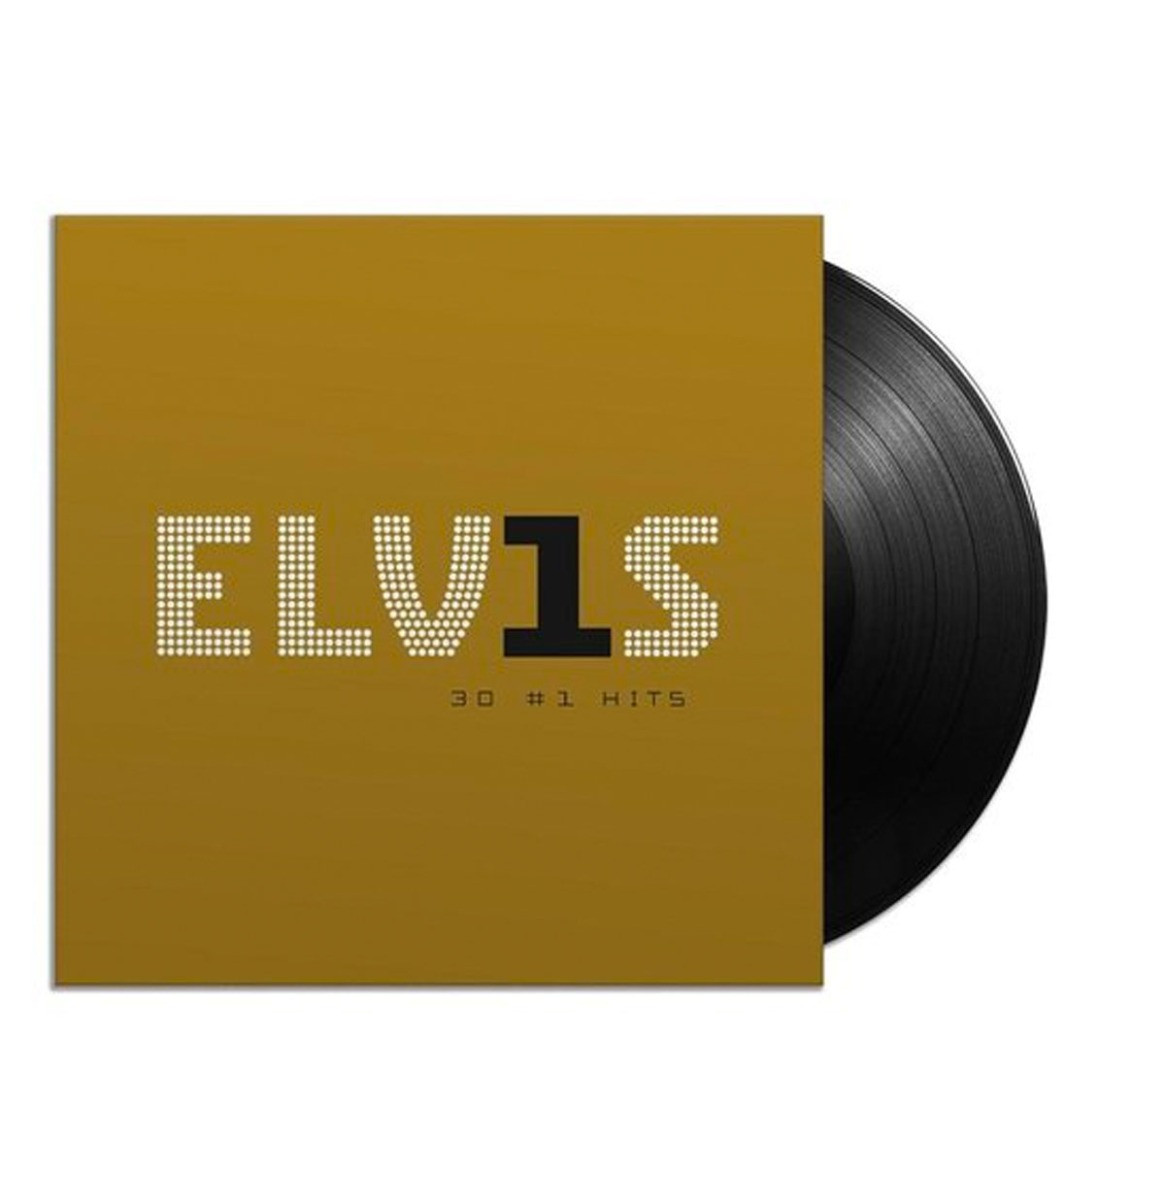 Elvis Presley - Elvis 30 #1 Hits 2LP